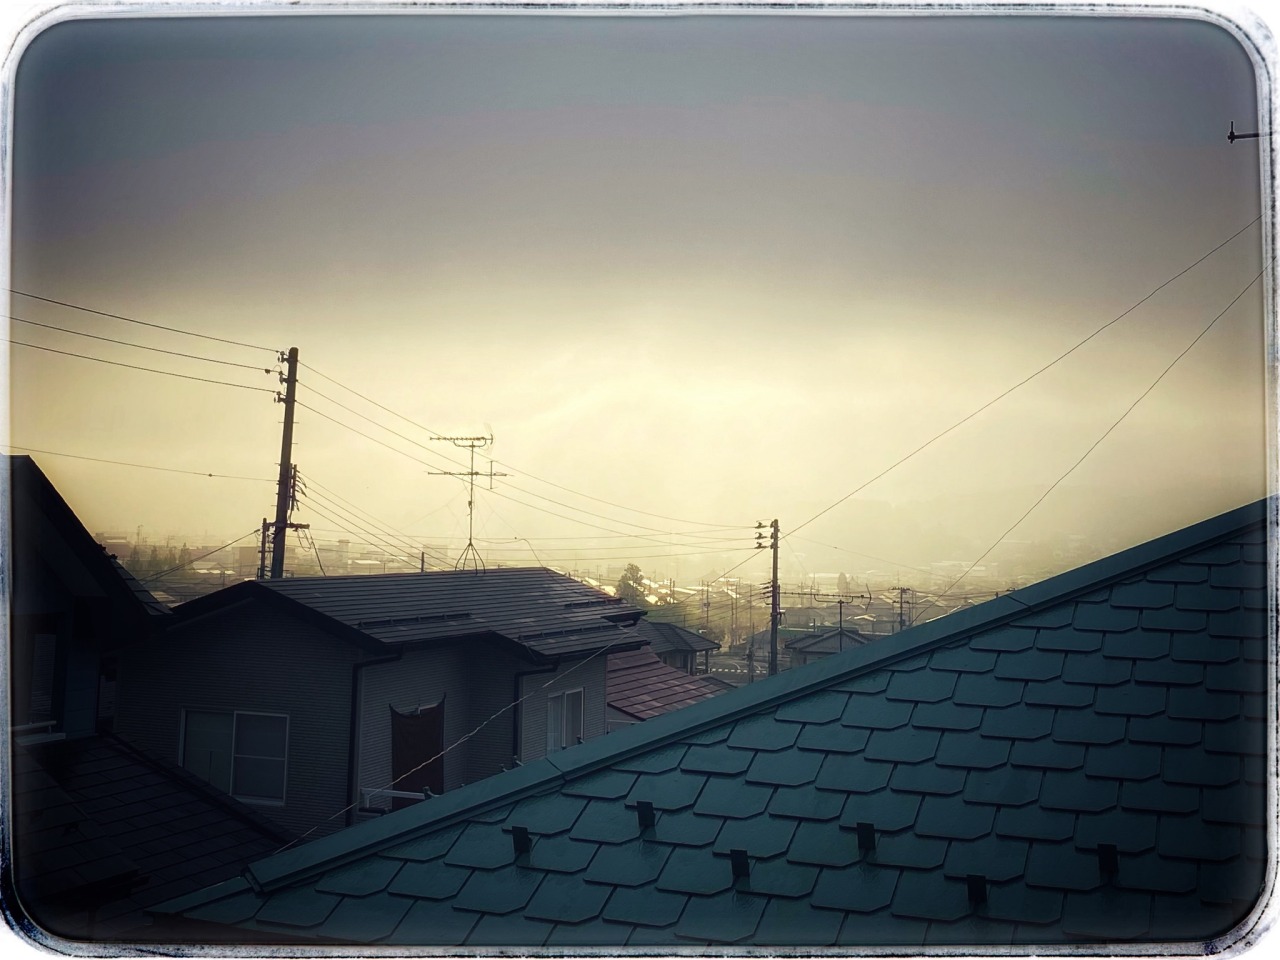 晩春と初夏の季節の変わり目で濃い霧の朝の街